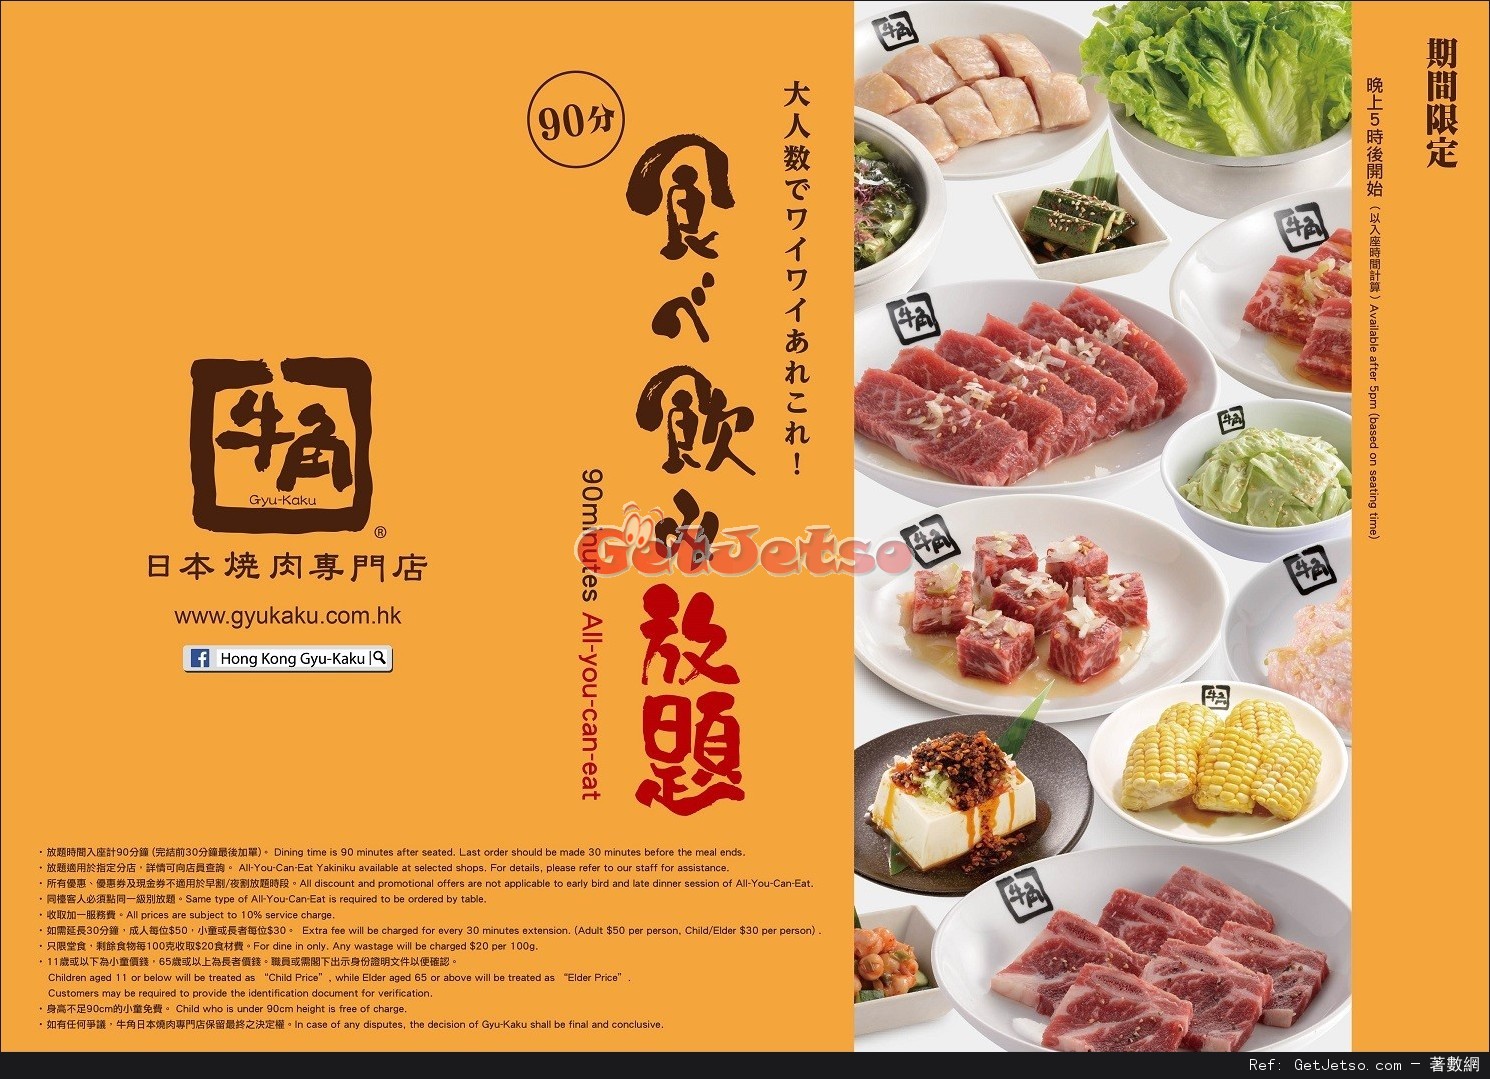 牛角日本燒肉專門店晚市放題優惠(至17年2月28日)圖片1